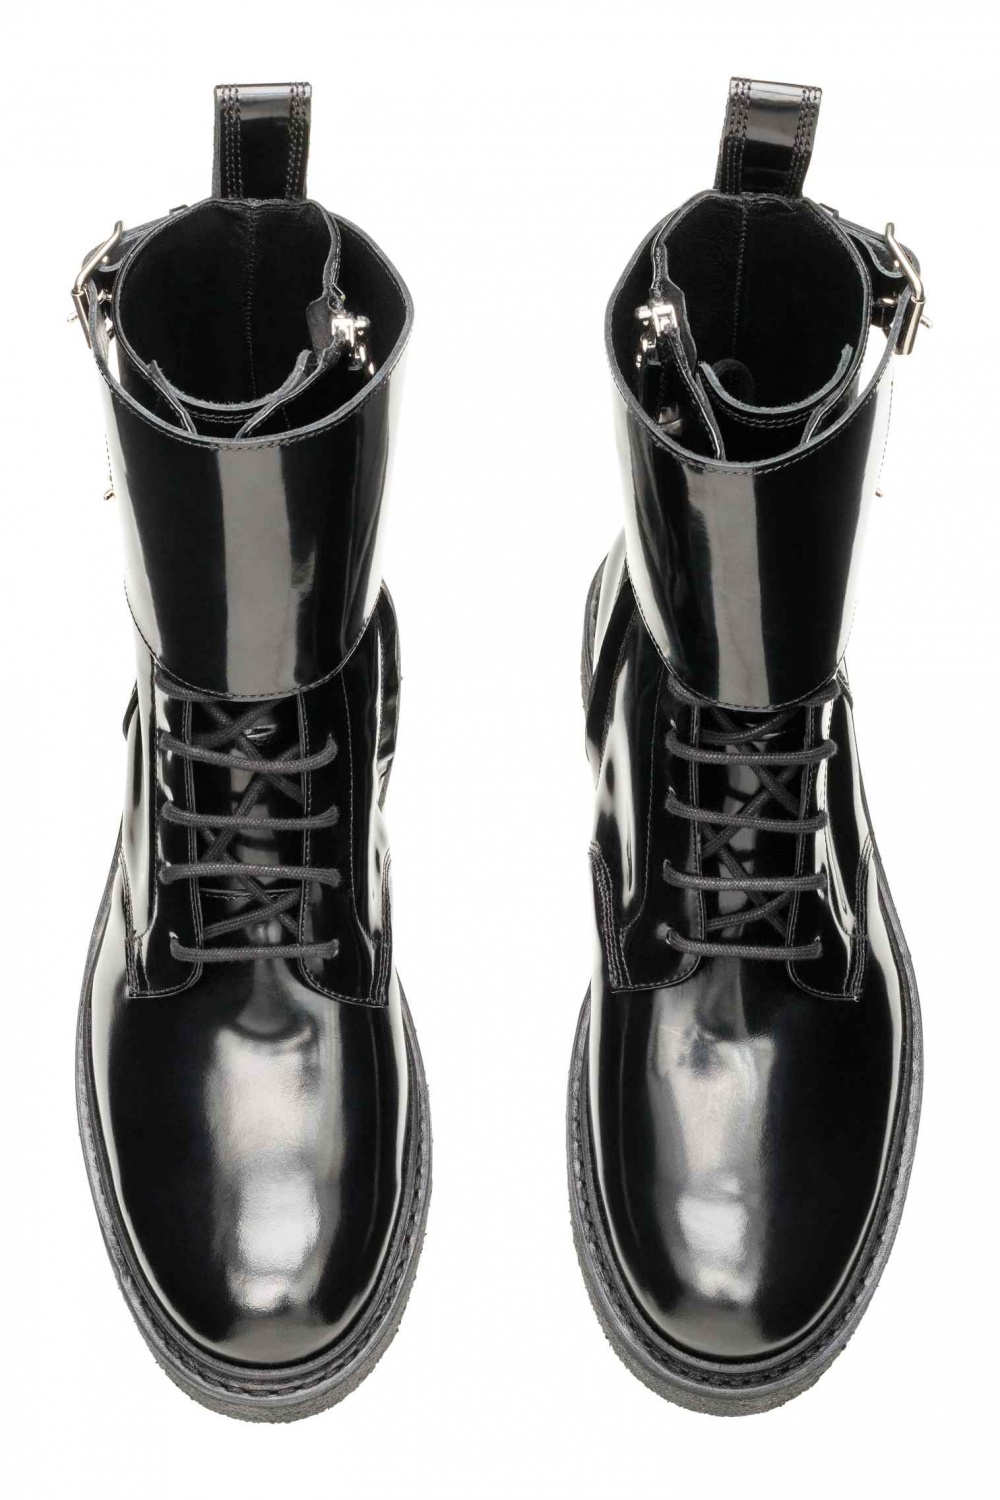 Высокие мужские лакированные ботинки BALMAIN x H&M. В размере 44. Абсолютно новые, в коробке, со всеми ярлыками.